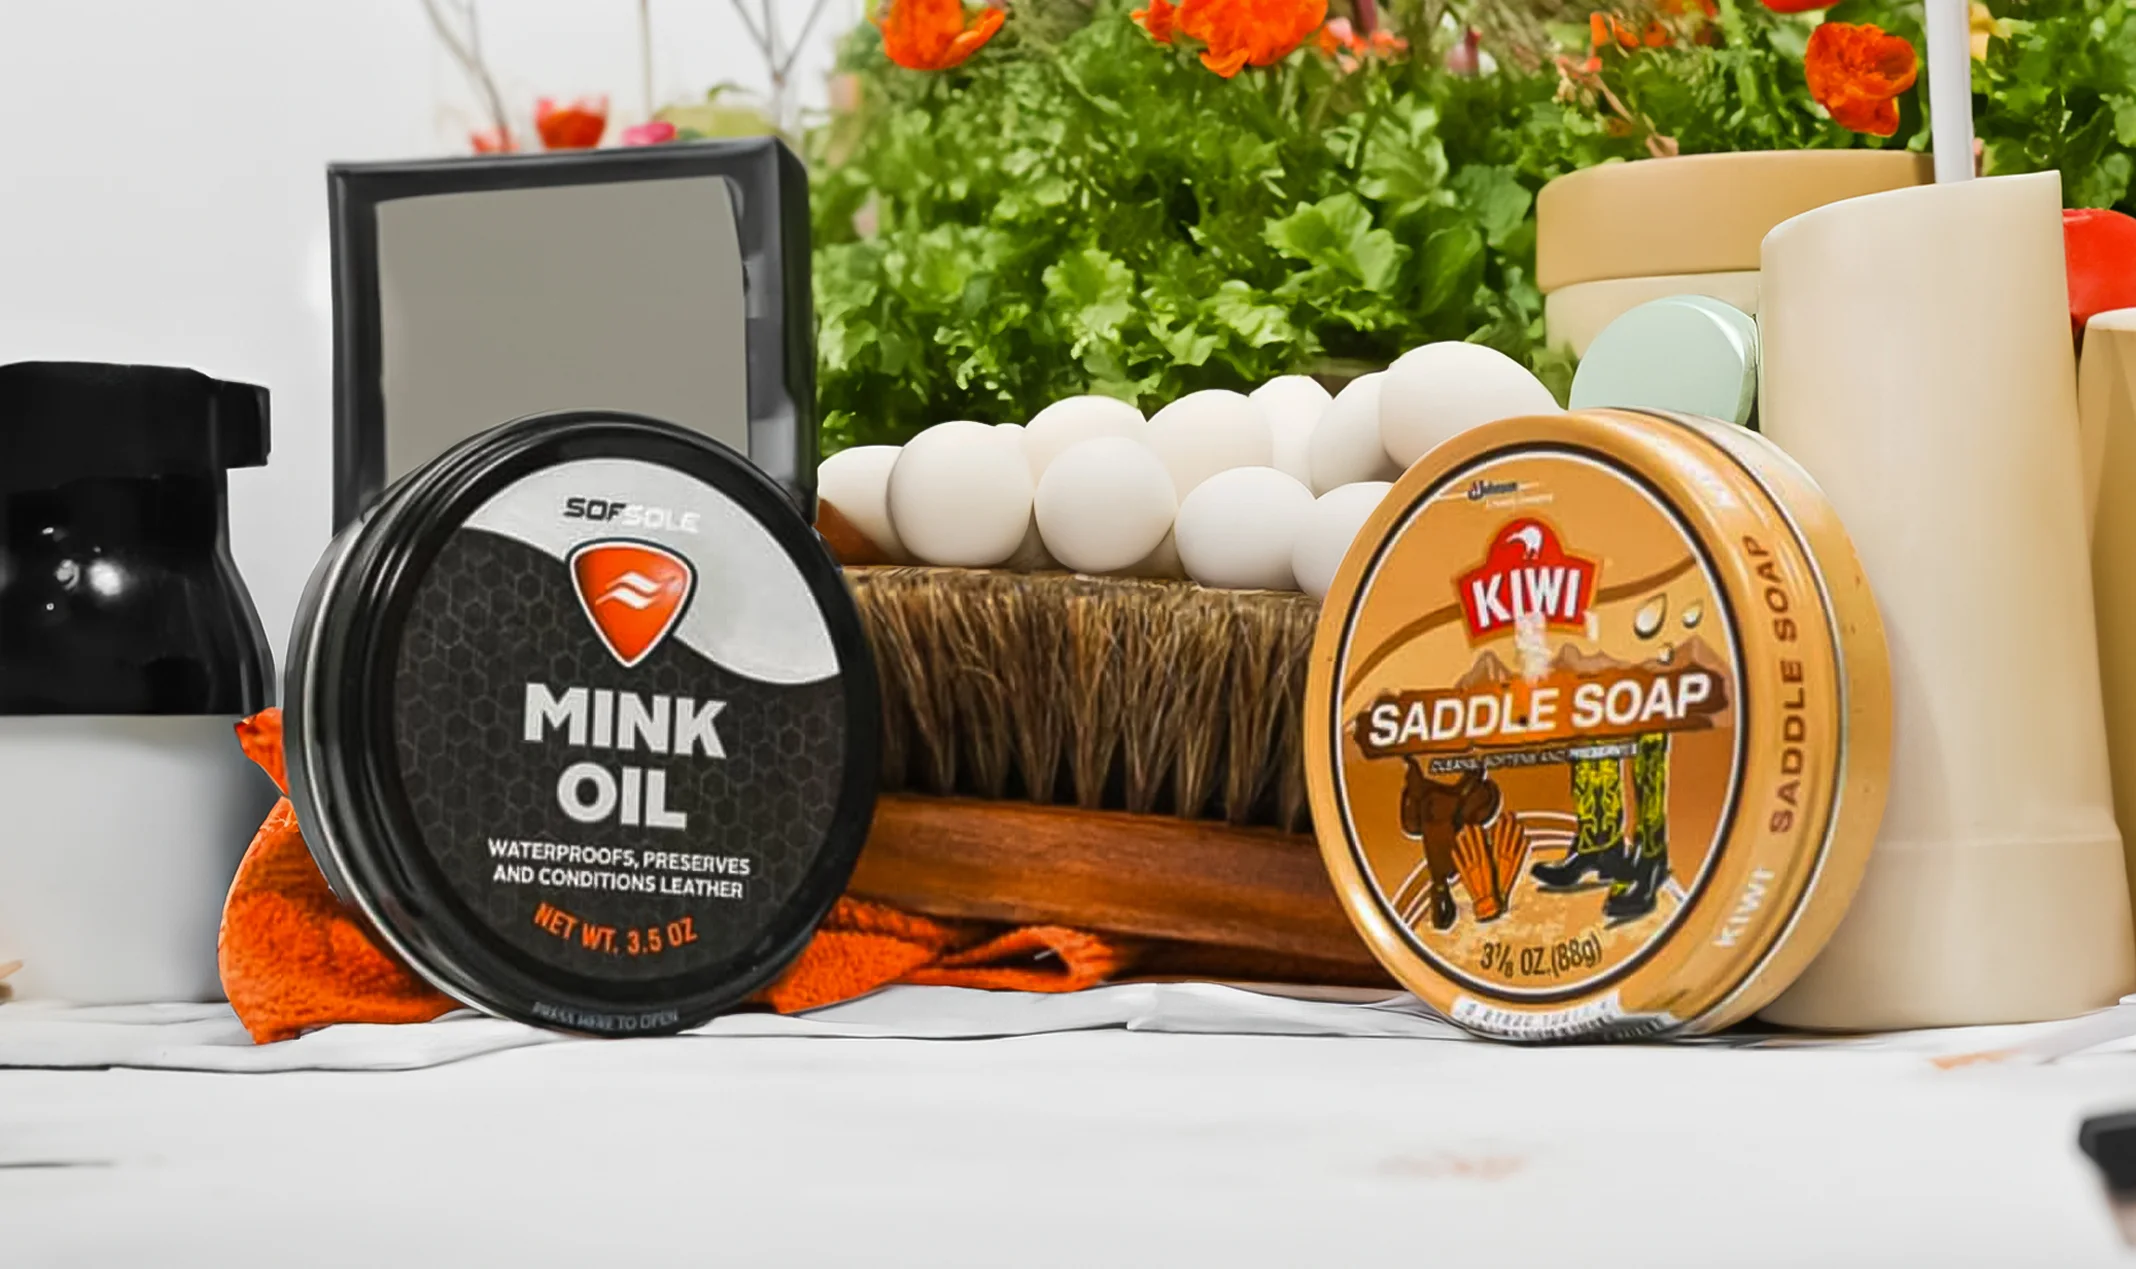 mink oil or saddle soap
